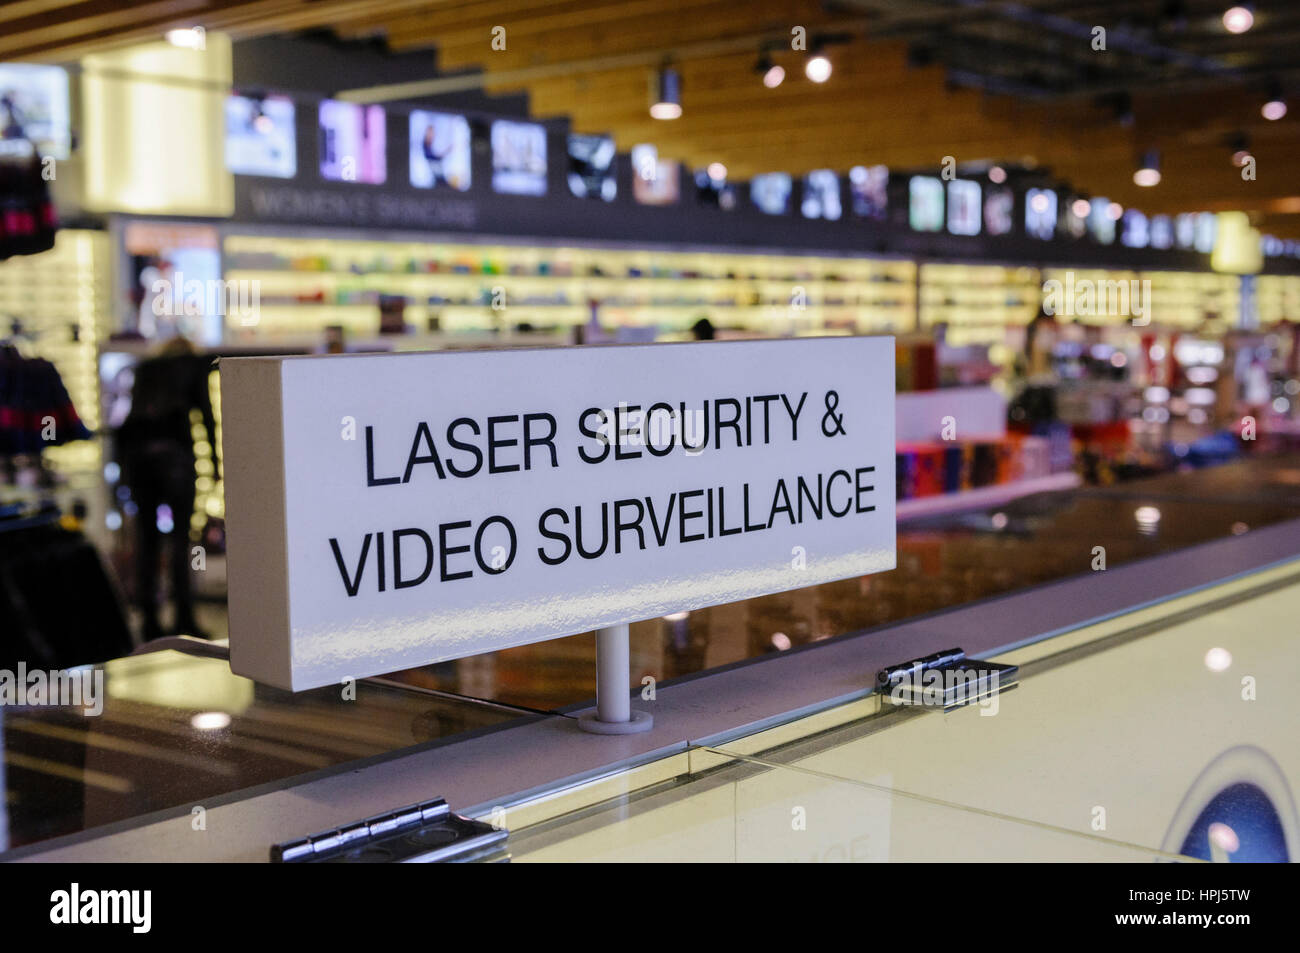 Schild an einer Duty free shop Warnung, dass Laser Sicherheit und Videoüberwachung an Ort und Stelle sind. Stockfoto